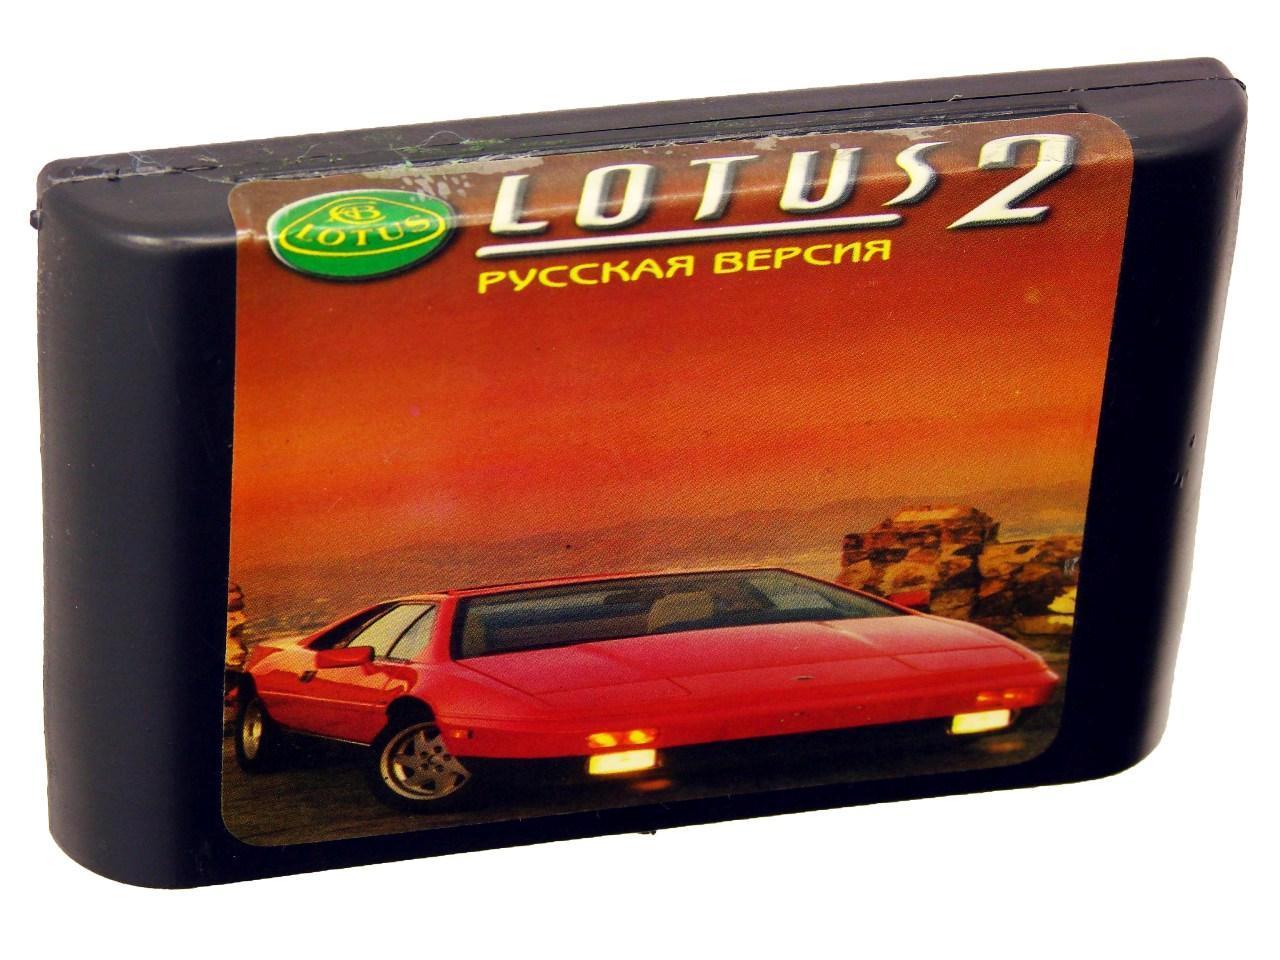 Картридж для Sega Lotus 2 (Sega)